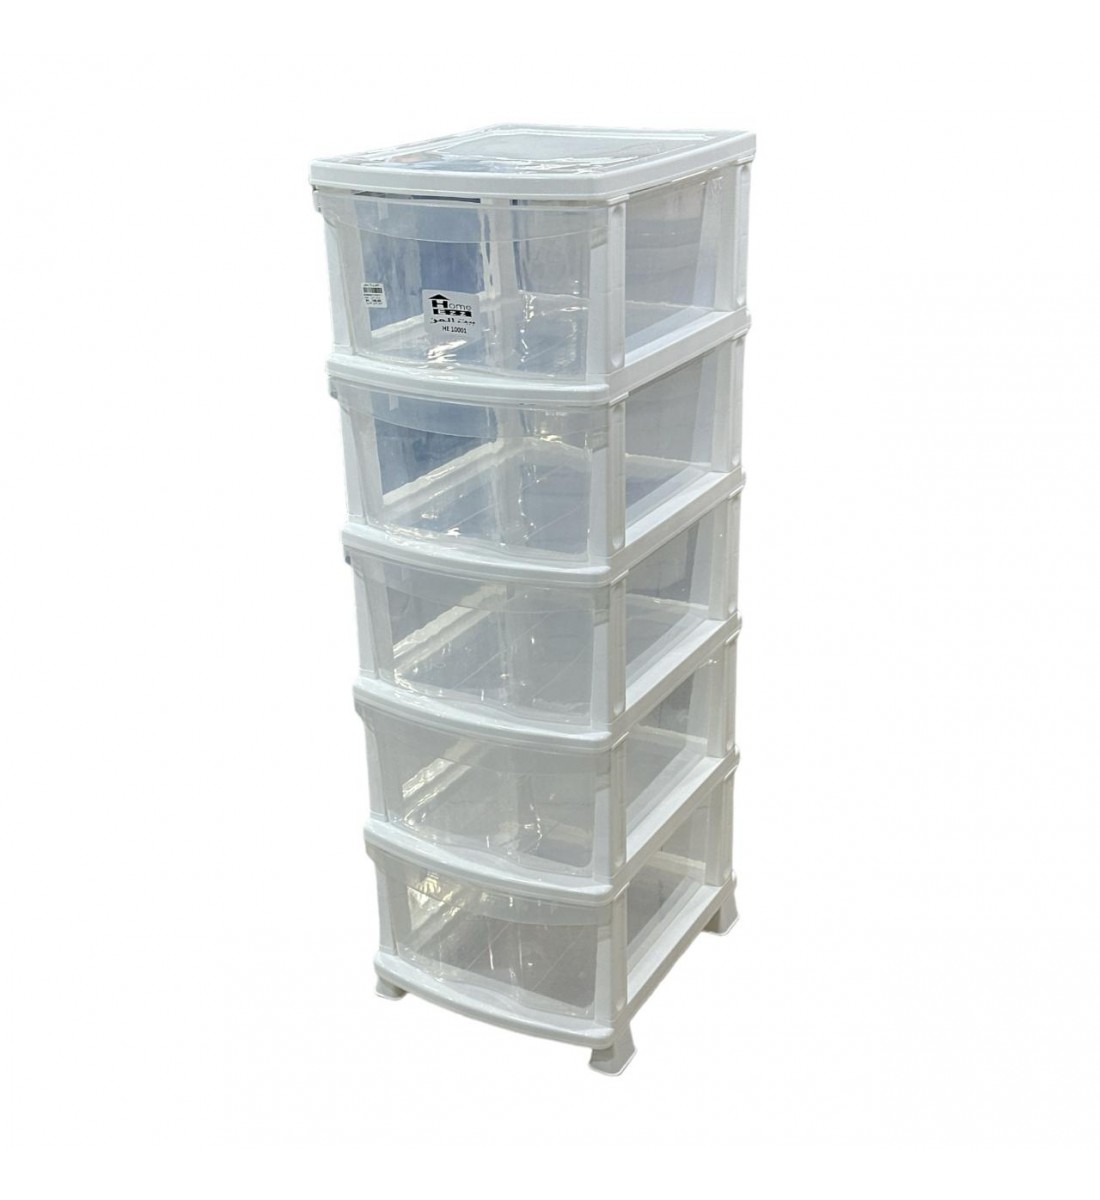 وحدة ادراج تخزين بلاستيك5 ادراج ابيض شفاف 47×37×115سم 